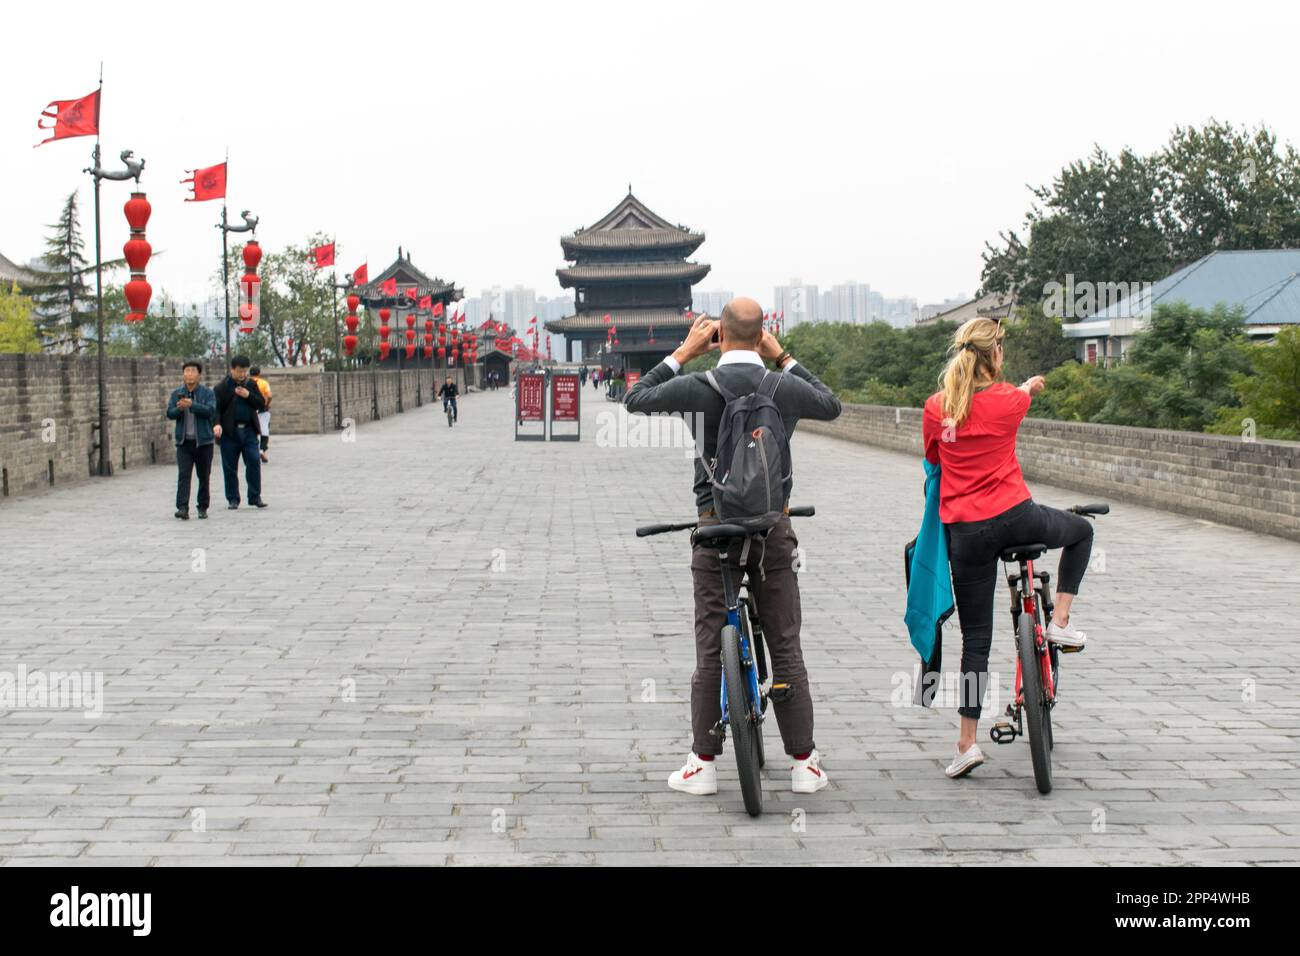 Le dos de deux touristes, un homme et une femme, s'arrêtent sur le mur de la ville de Xi'an tout en vélo pour prendre une photo. Banque D'Images